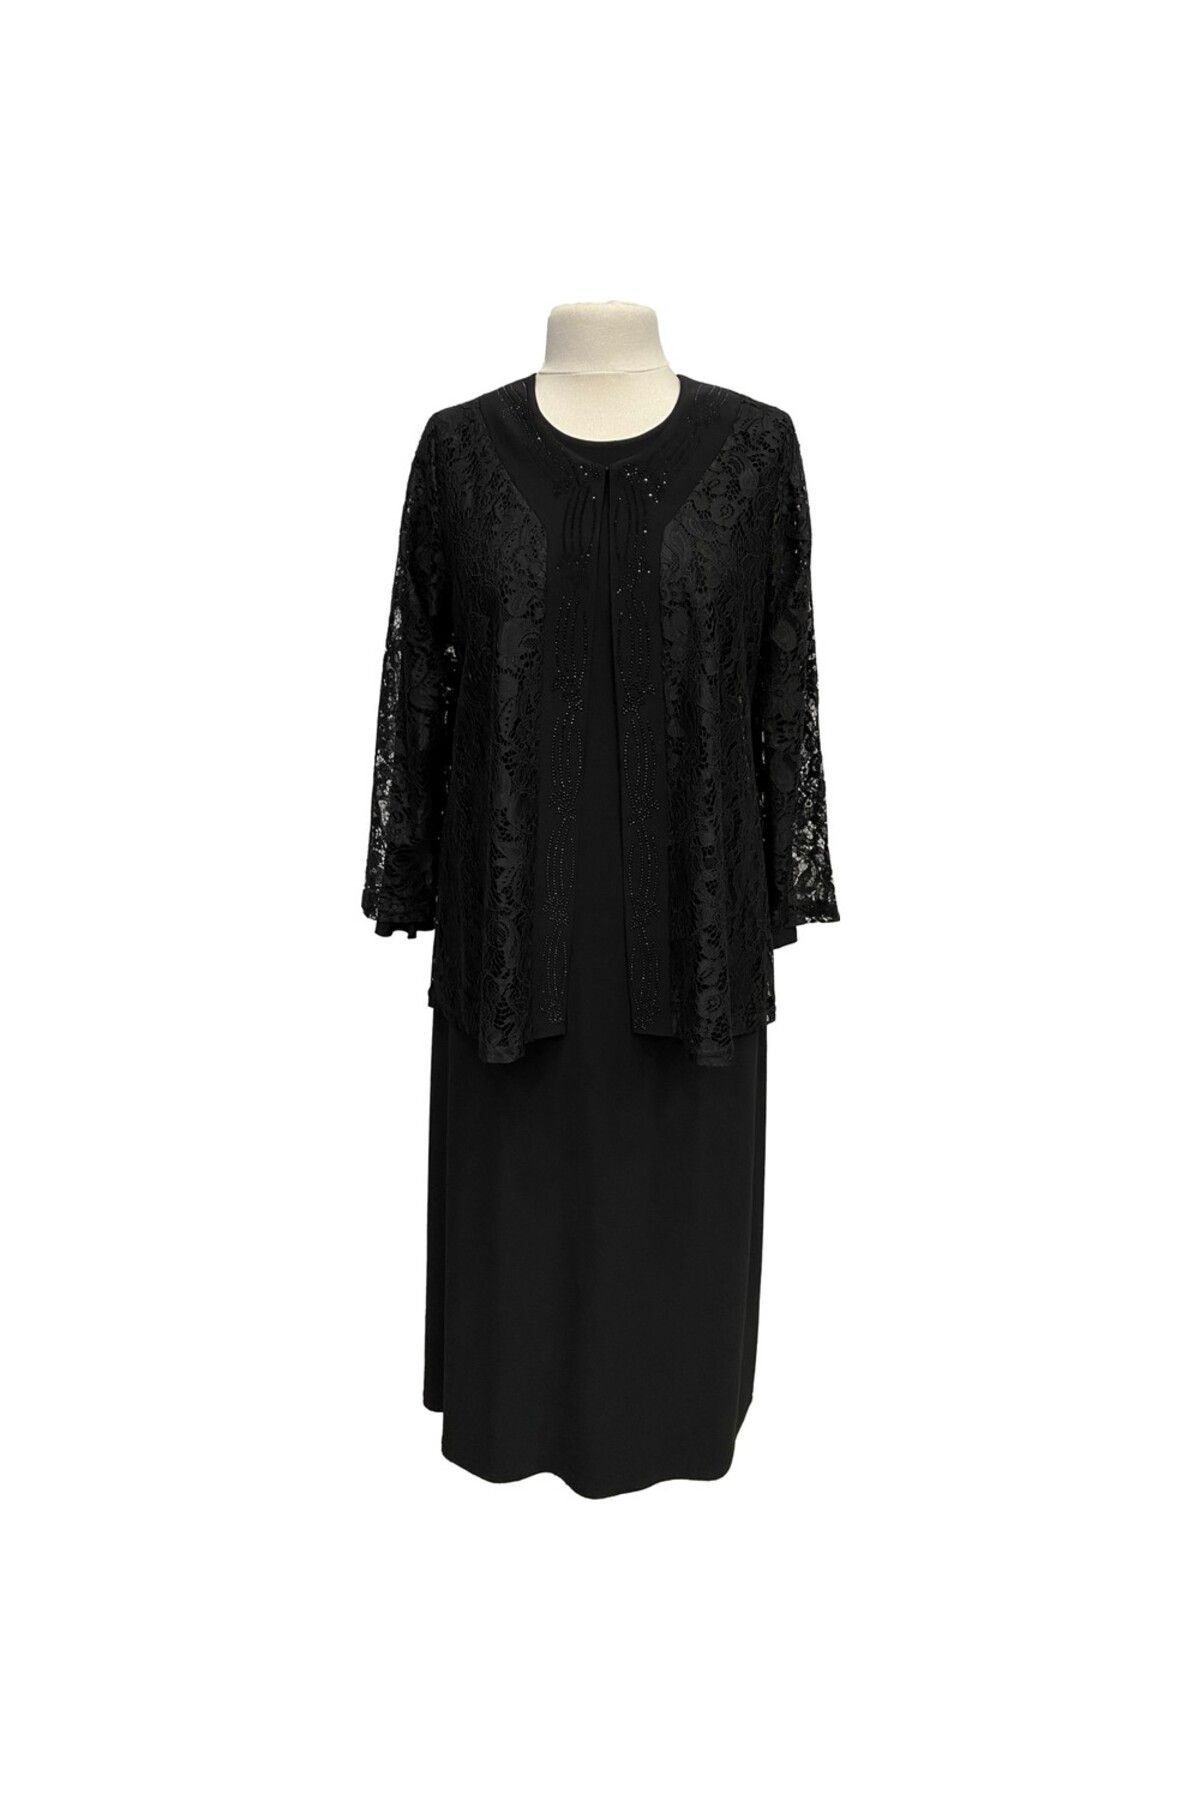 HESNA Siyah Büyük Beden Demet Ceketli Elbise Anne Abiye Takım